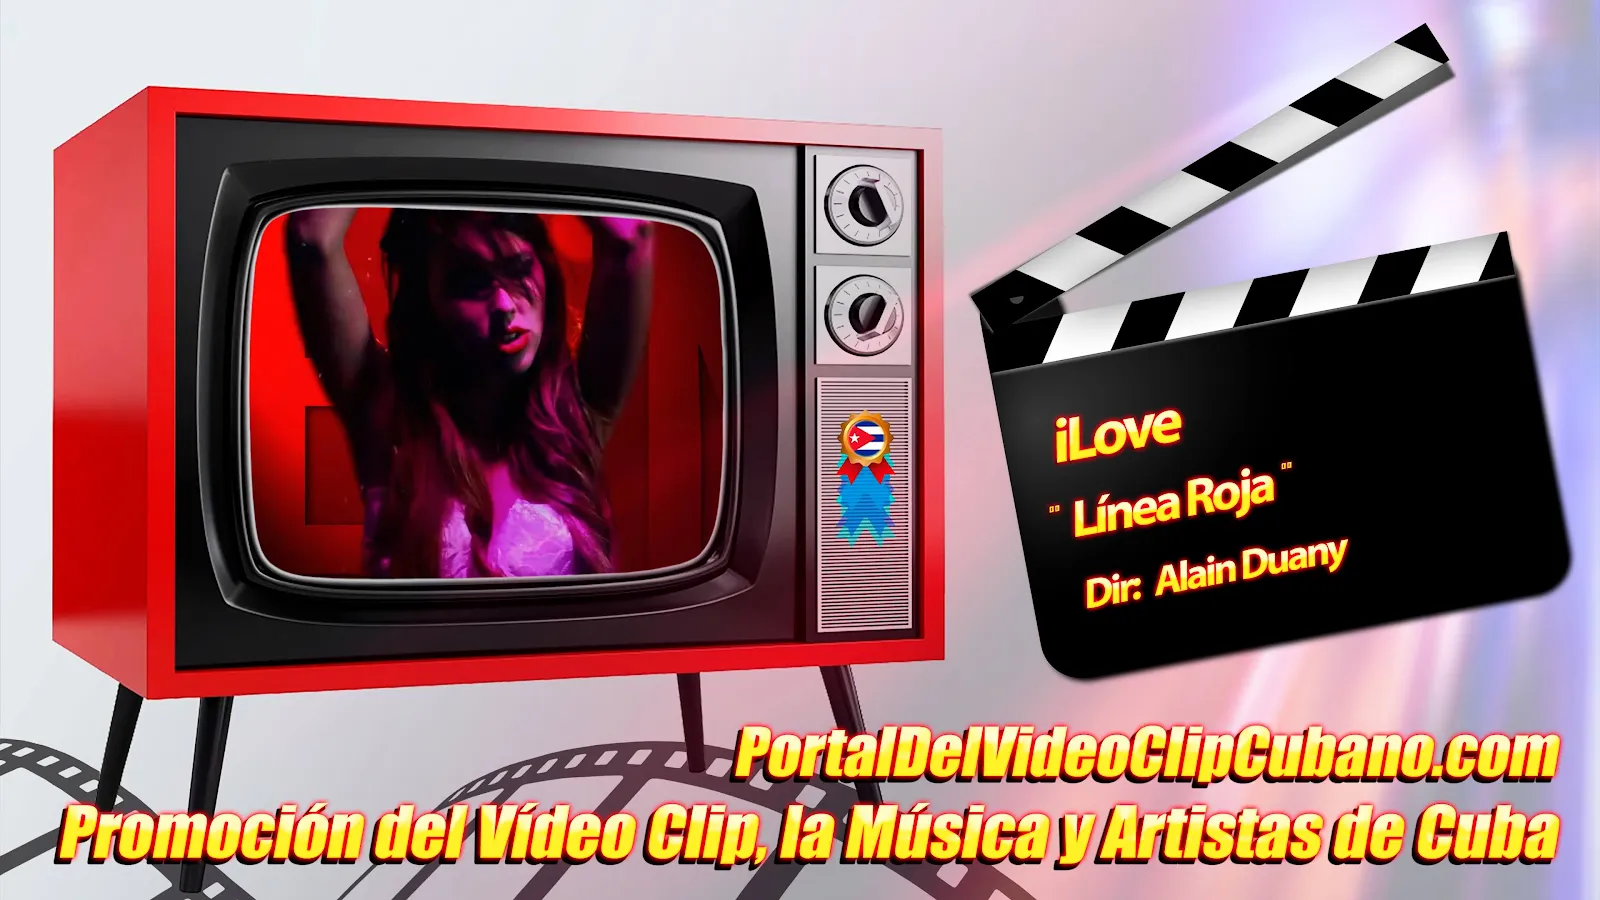 iLove- ¨Línea Roja¨ - Director: Alain Duany. Portal Del Vídeo Clip Cubano. Música cubana. CUBA.